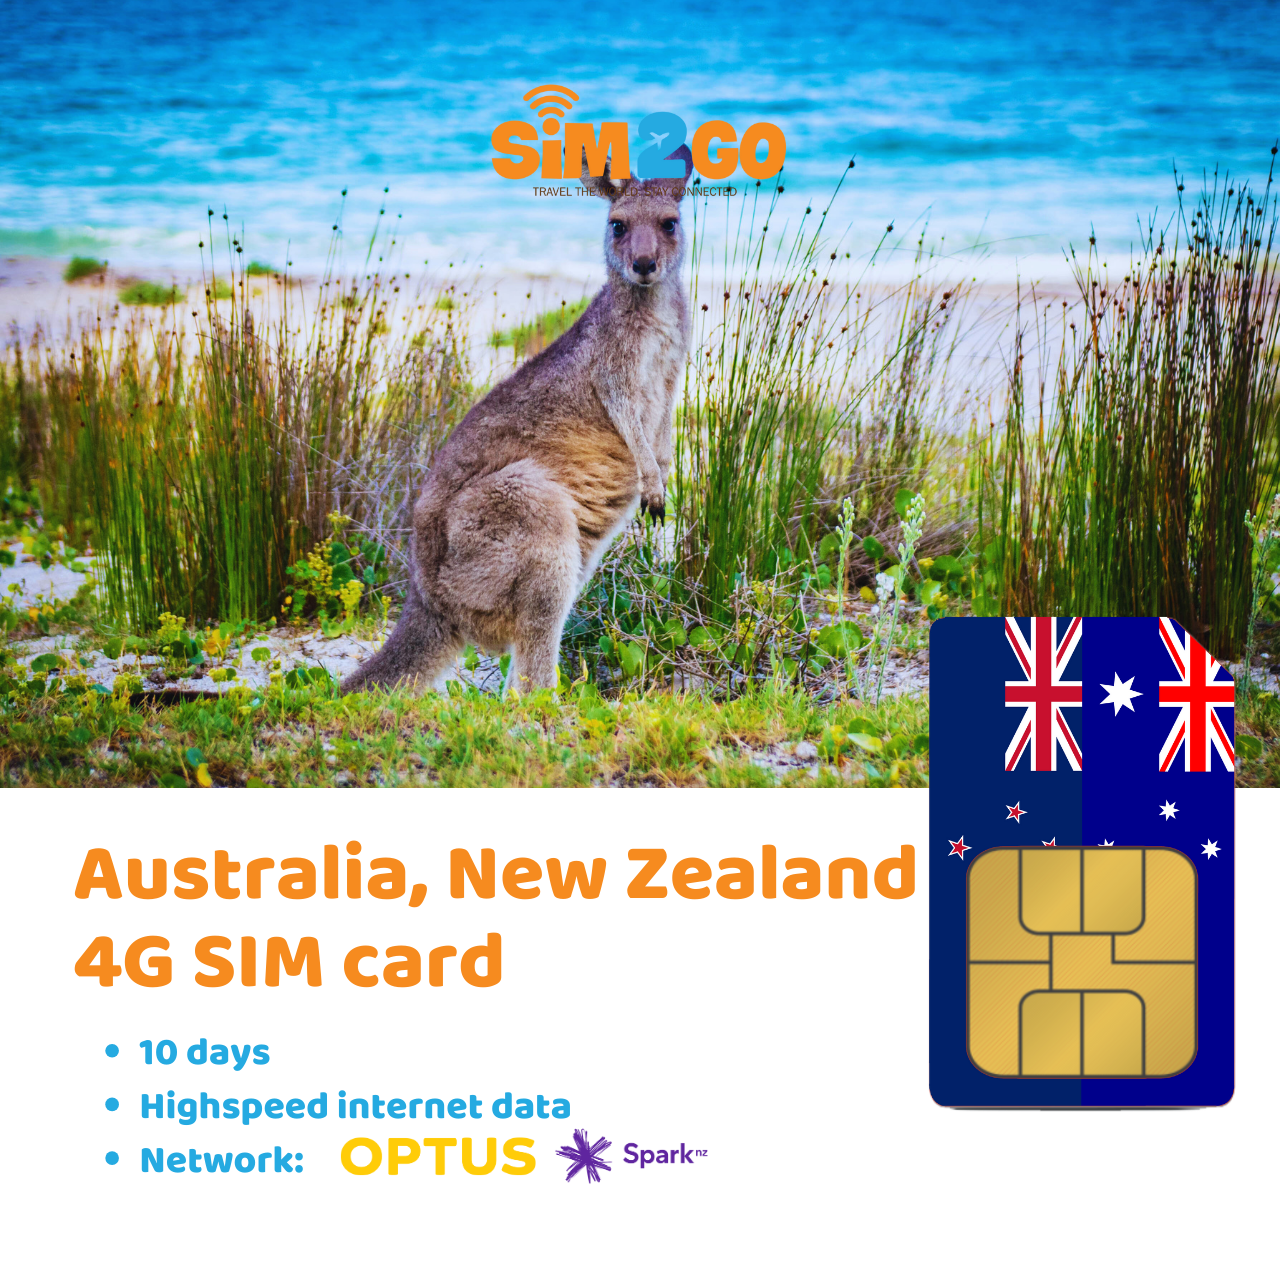 australia-new zealand-sim-card-for-10-days